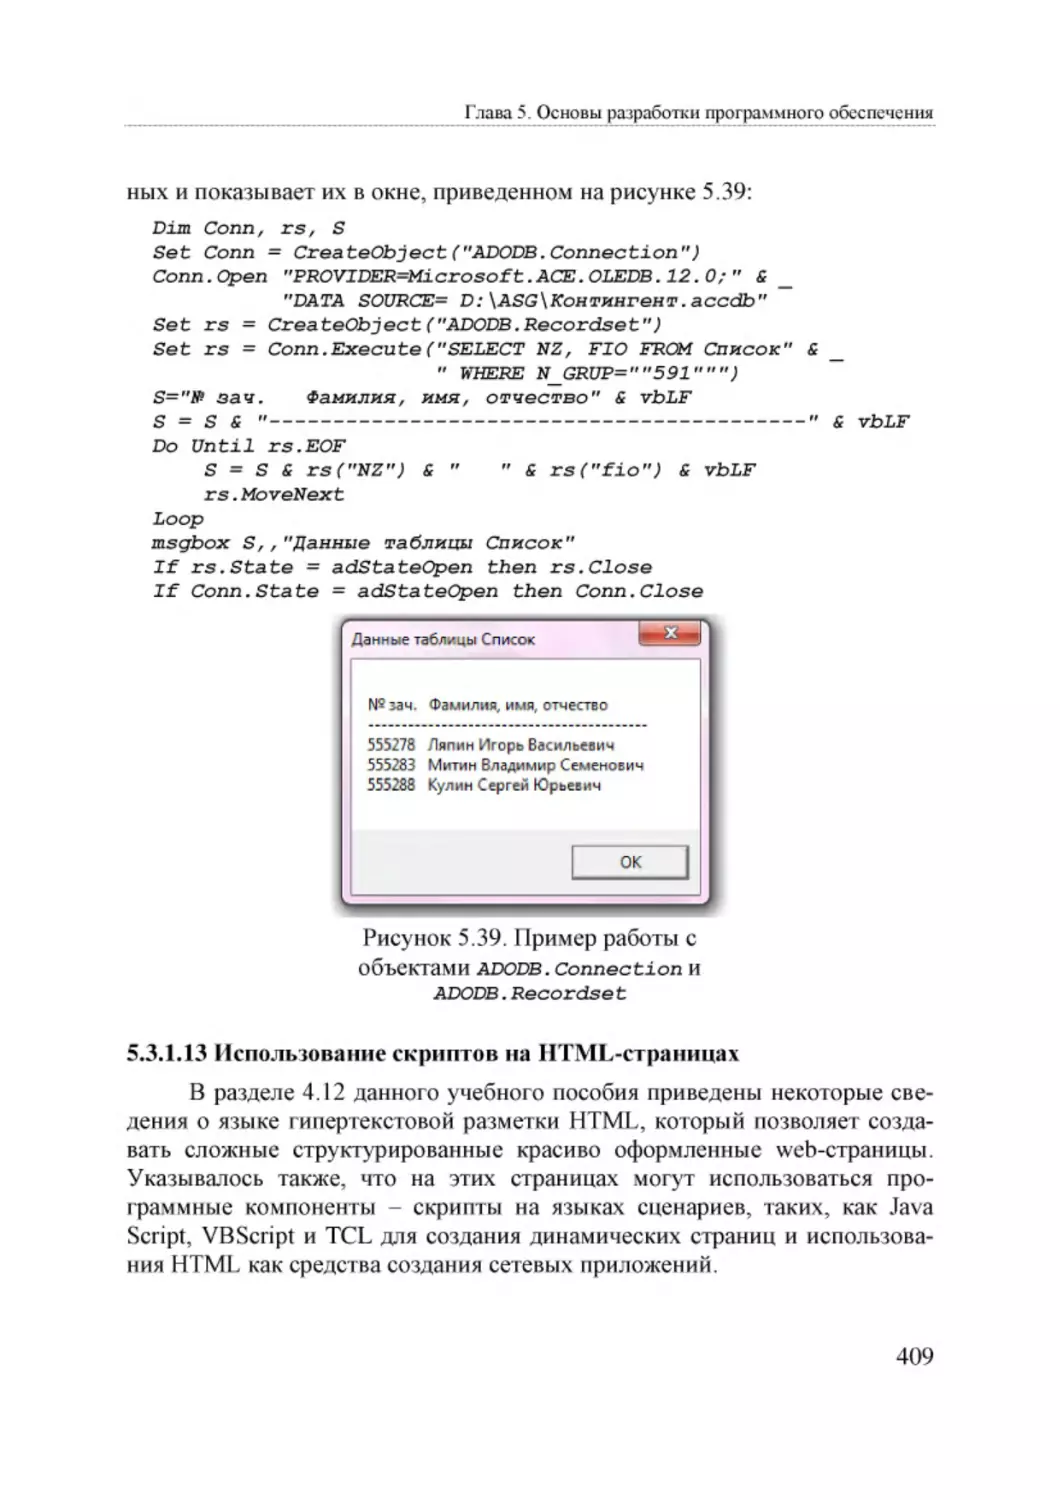 Informatika_Uchebnik_dlya_vuzov_2010 409